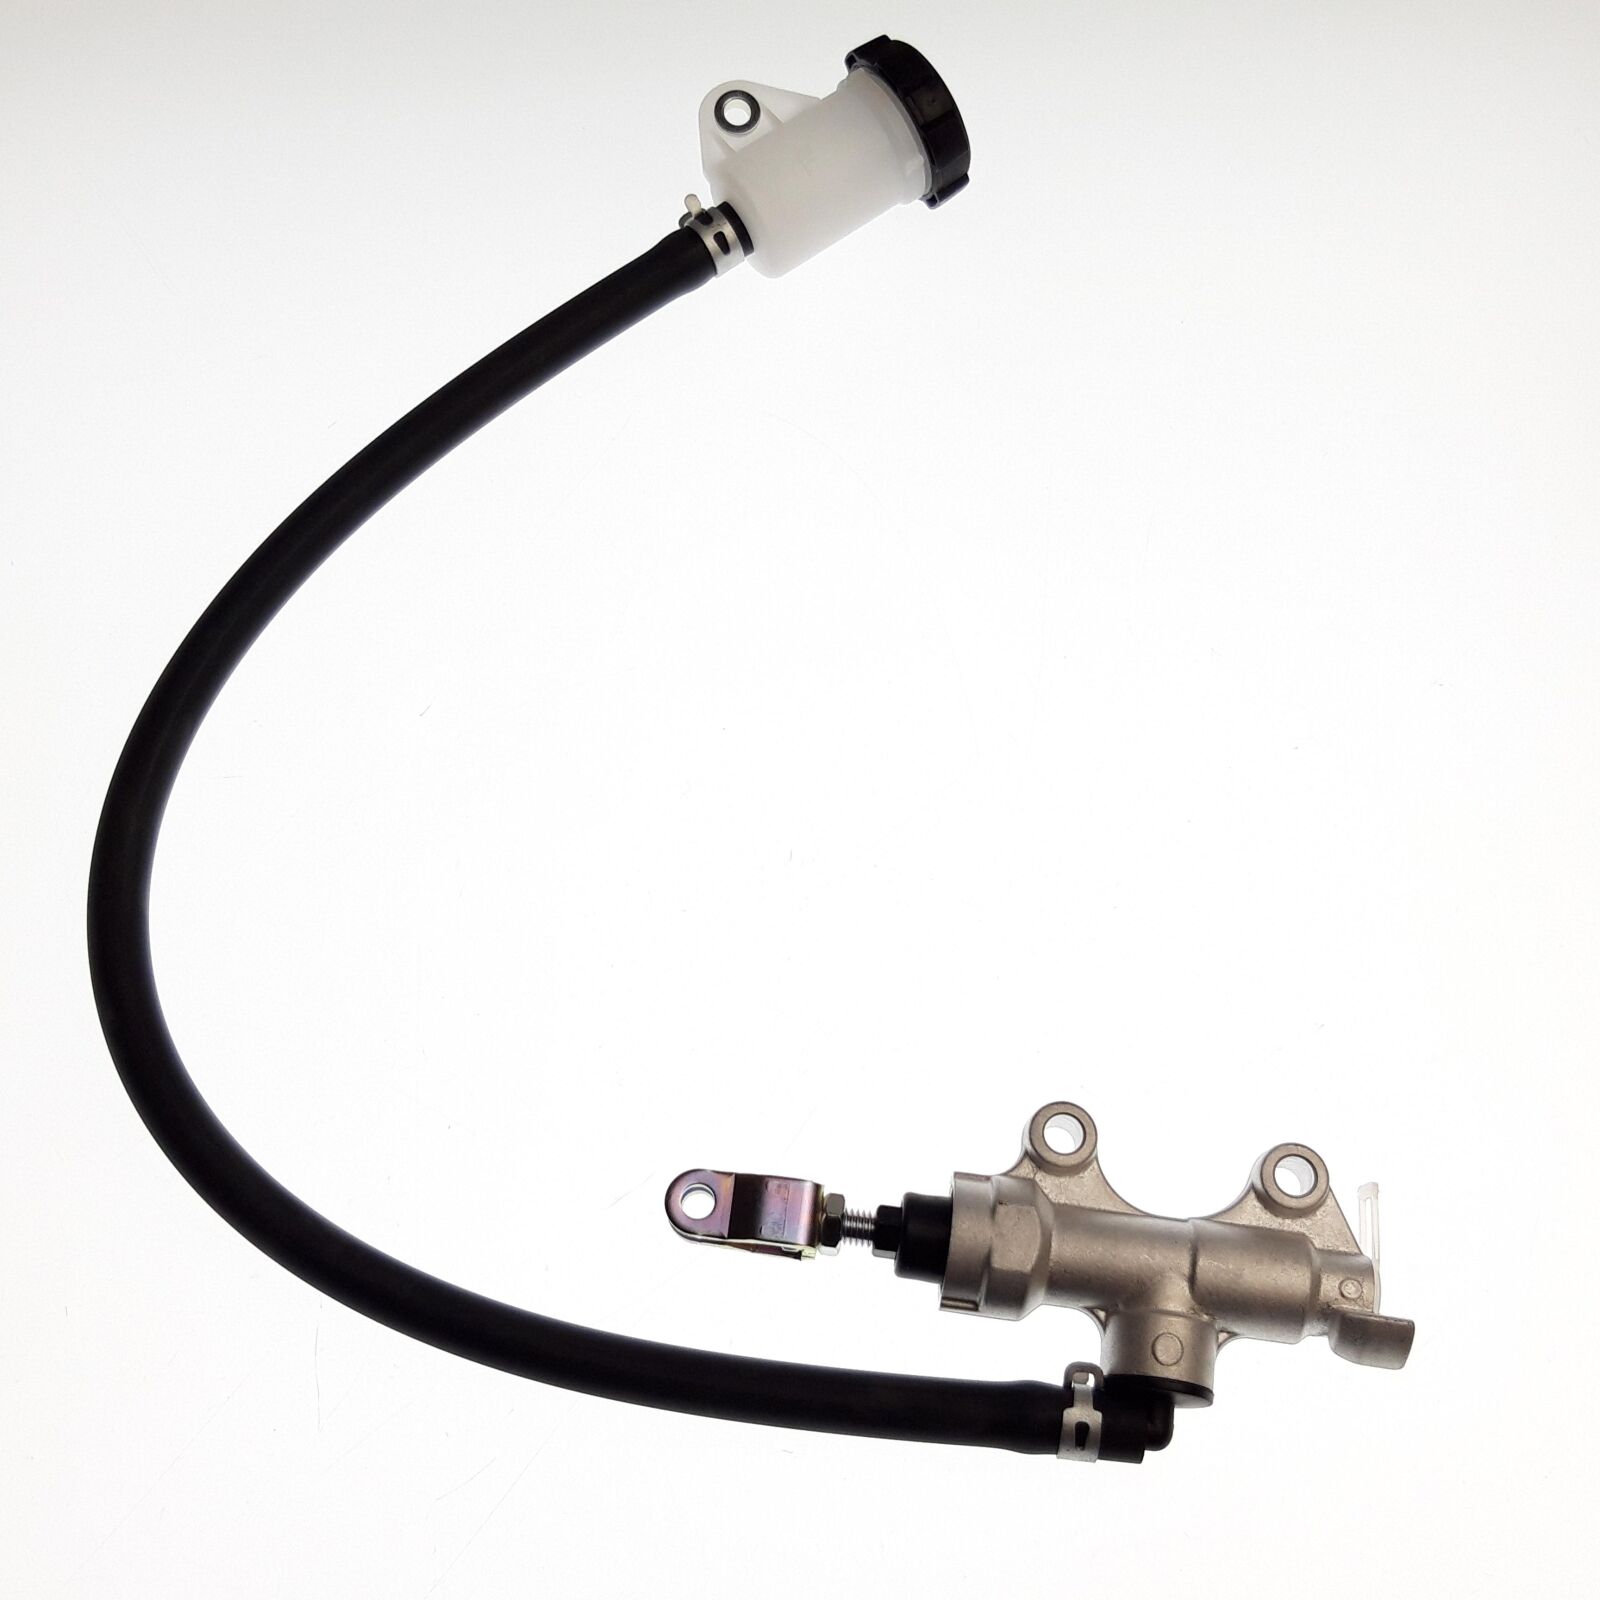 Obrázek produktu Hydraulic Pump,Footbrake 31406-A02-000